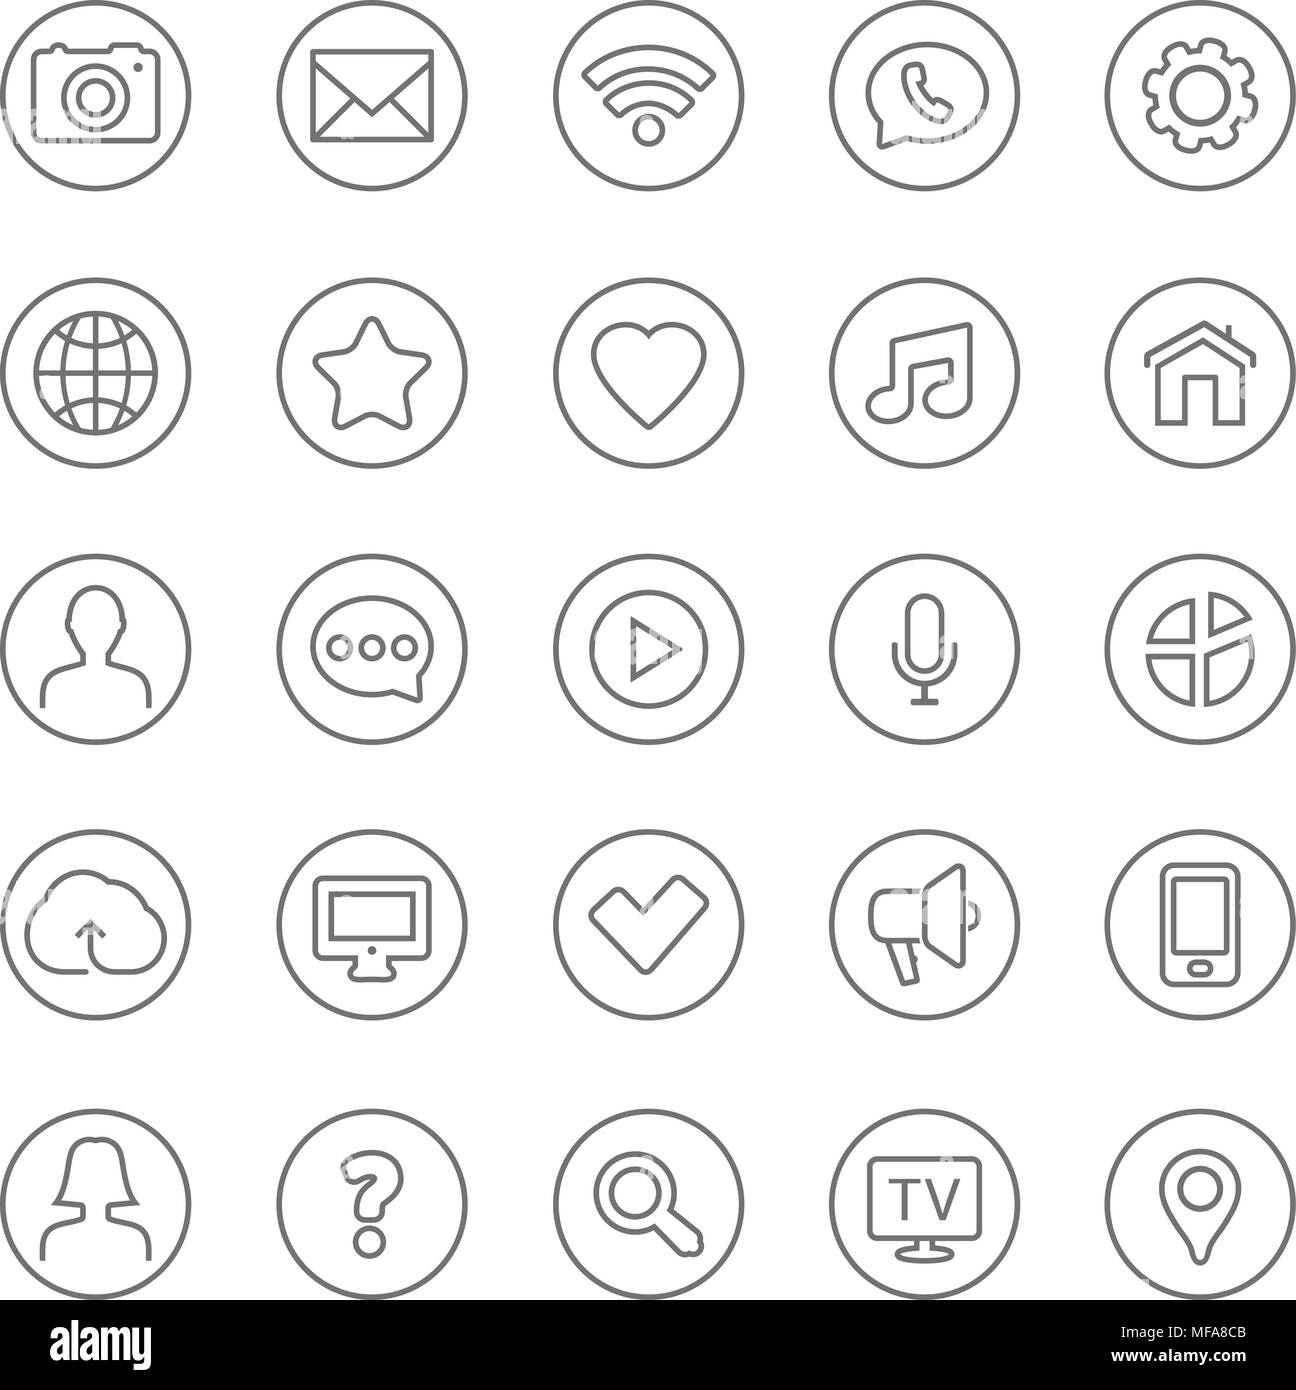 Lignes fines web icons set - Contact et de la communication. Vector illustration. Illustration de Vecteur